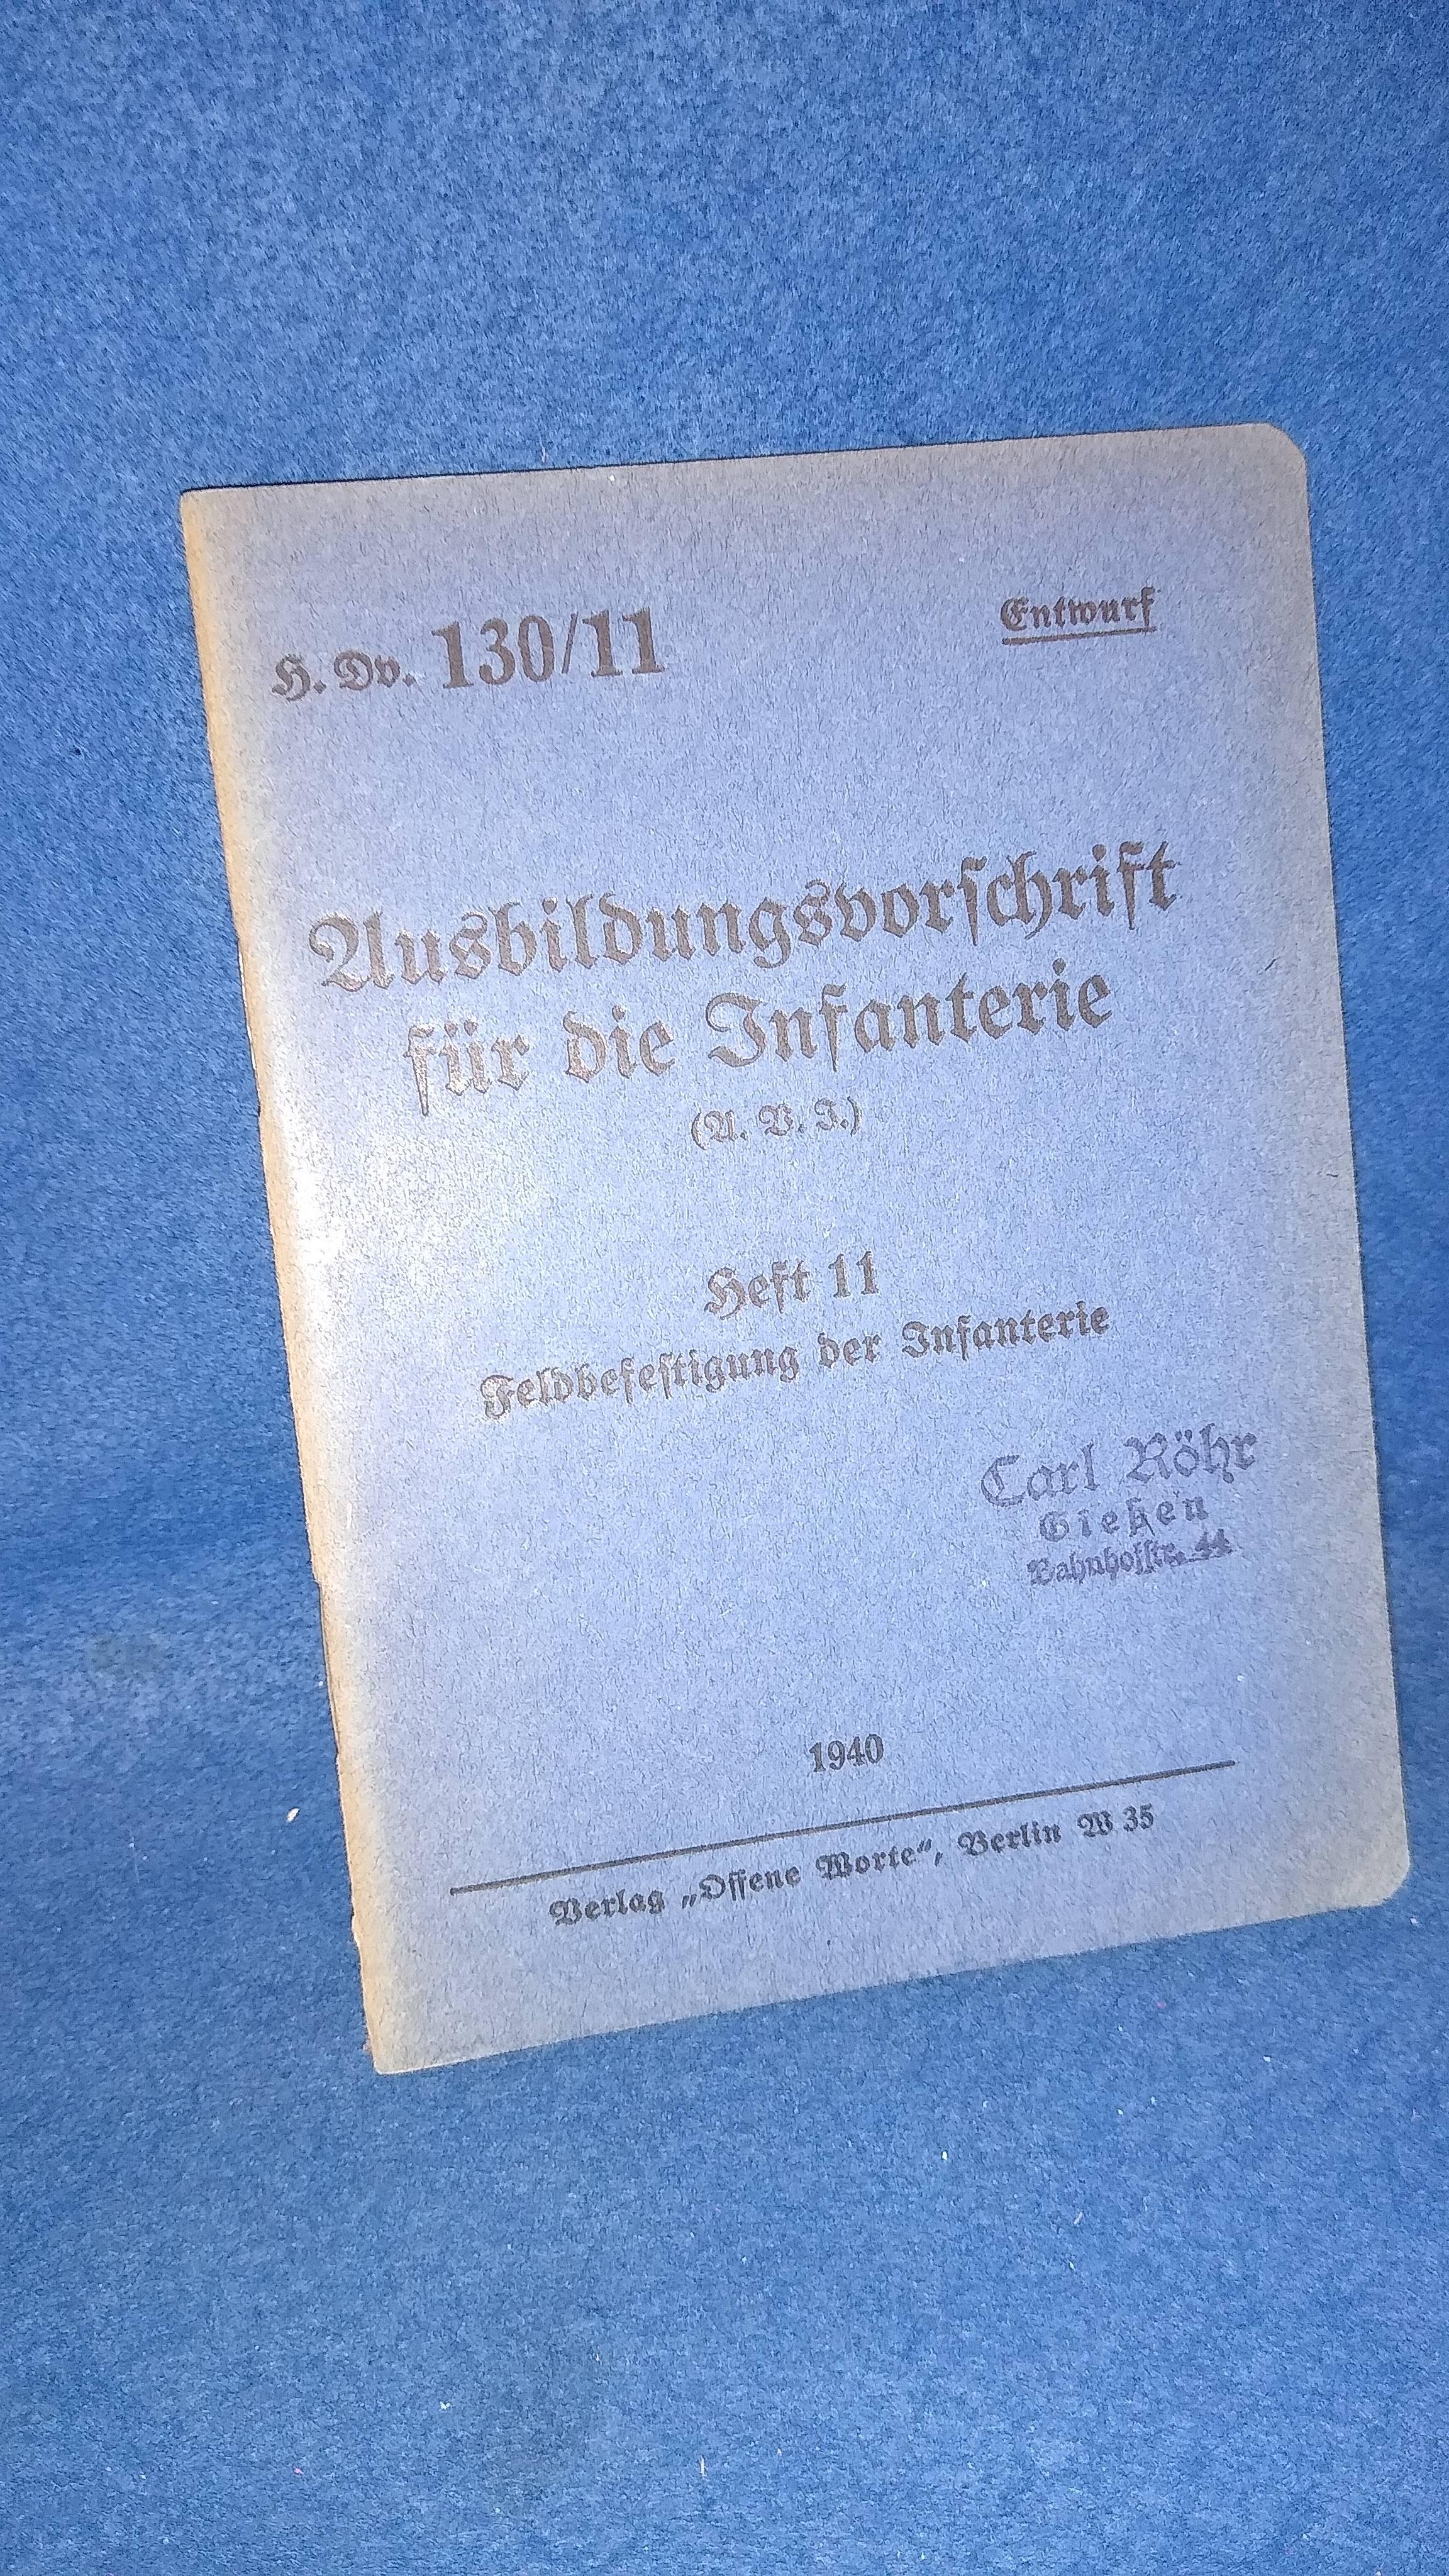 H.Dv.130/11. Ausbildungsvorschrift für die Infanterie. (A.B.I.) Heft 11. Feldbefestigung der Infanterie. 